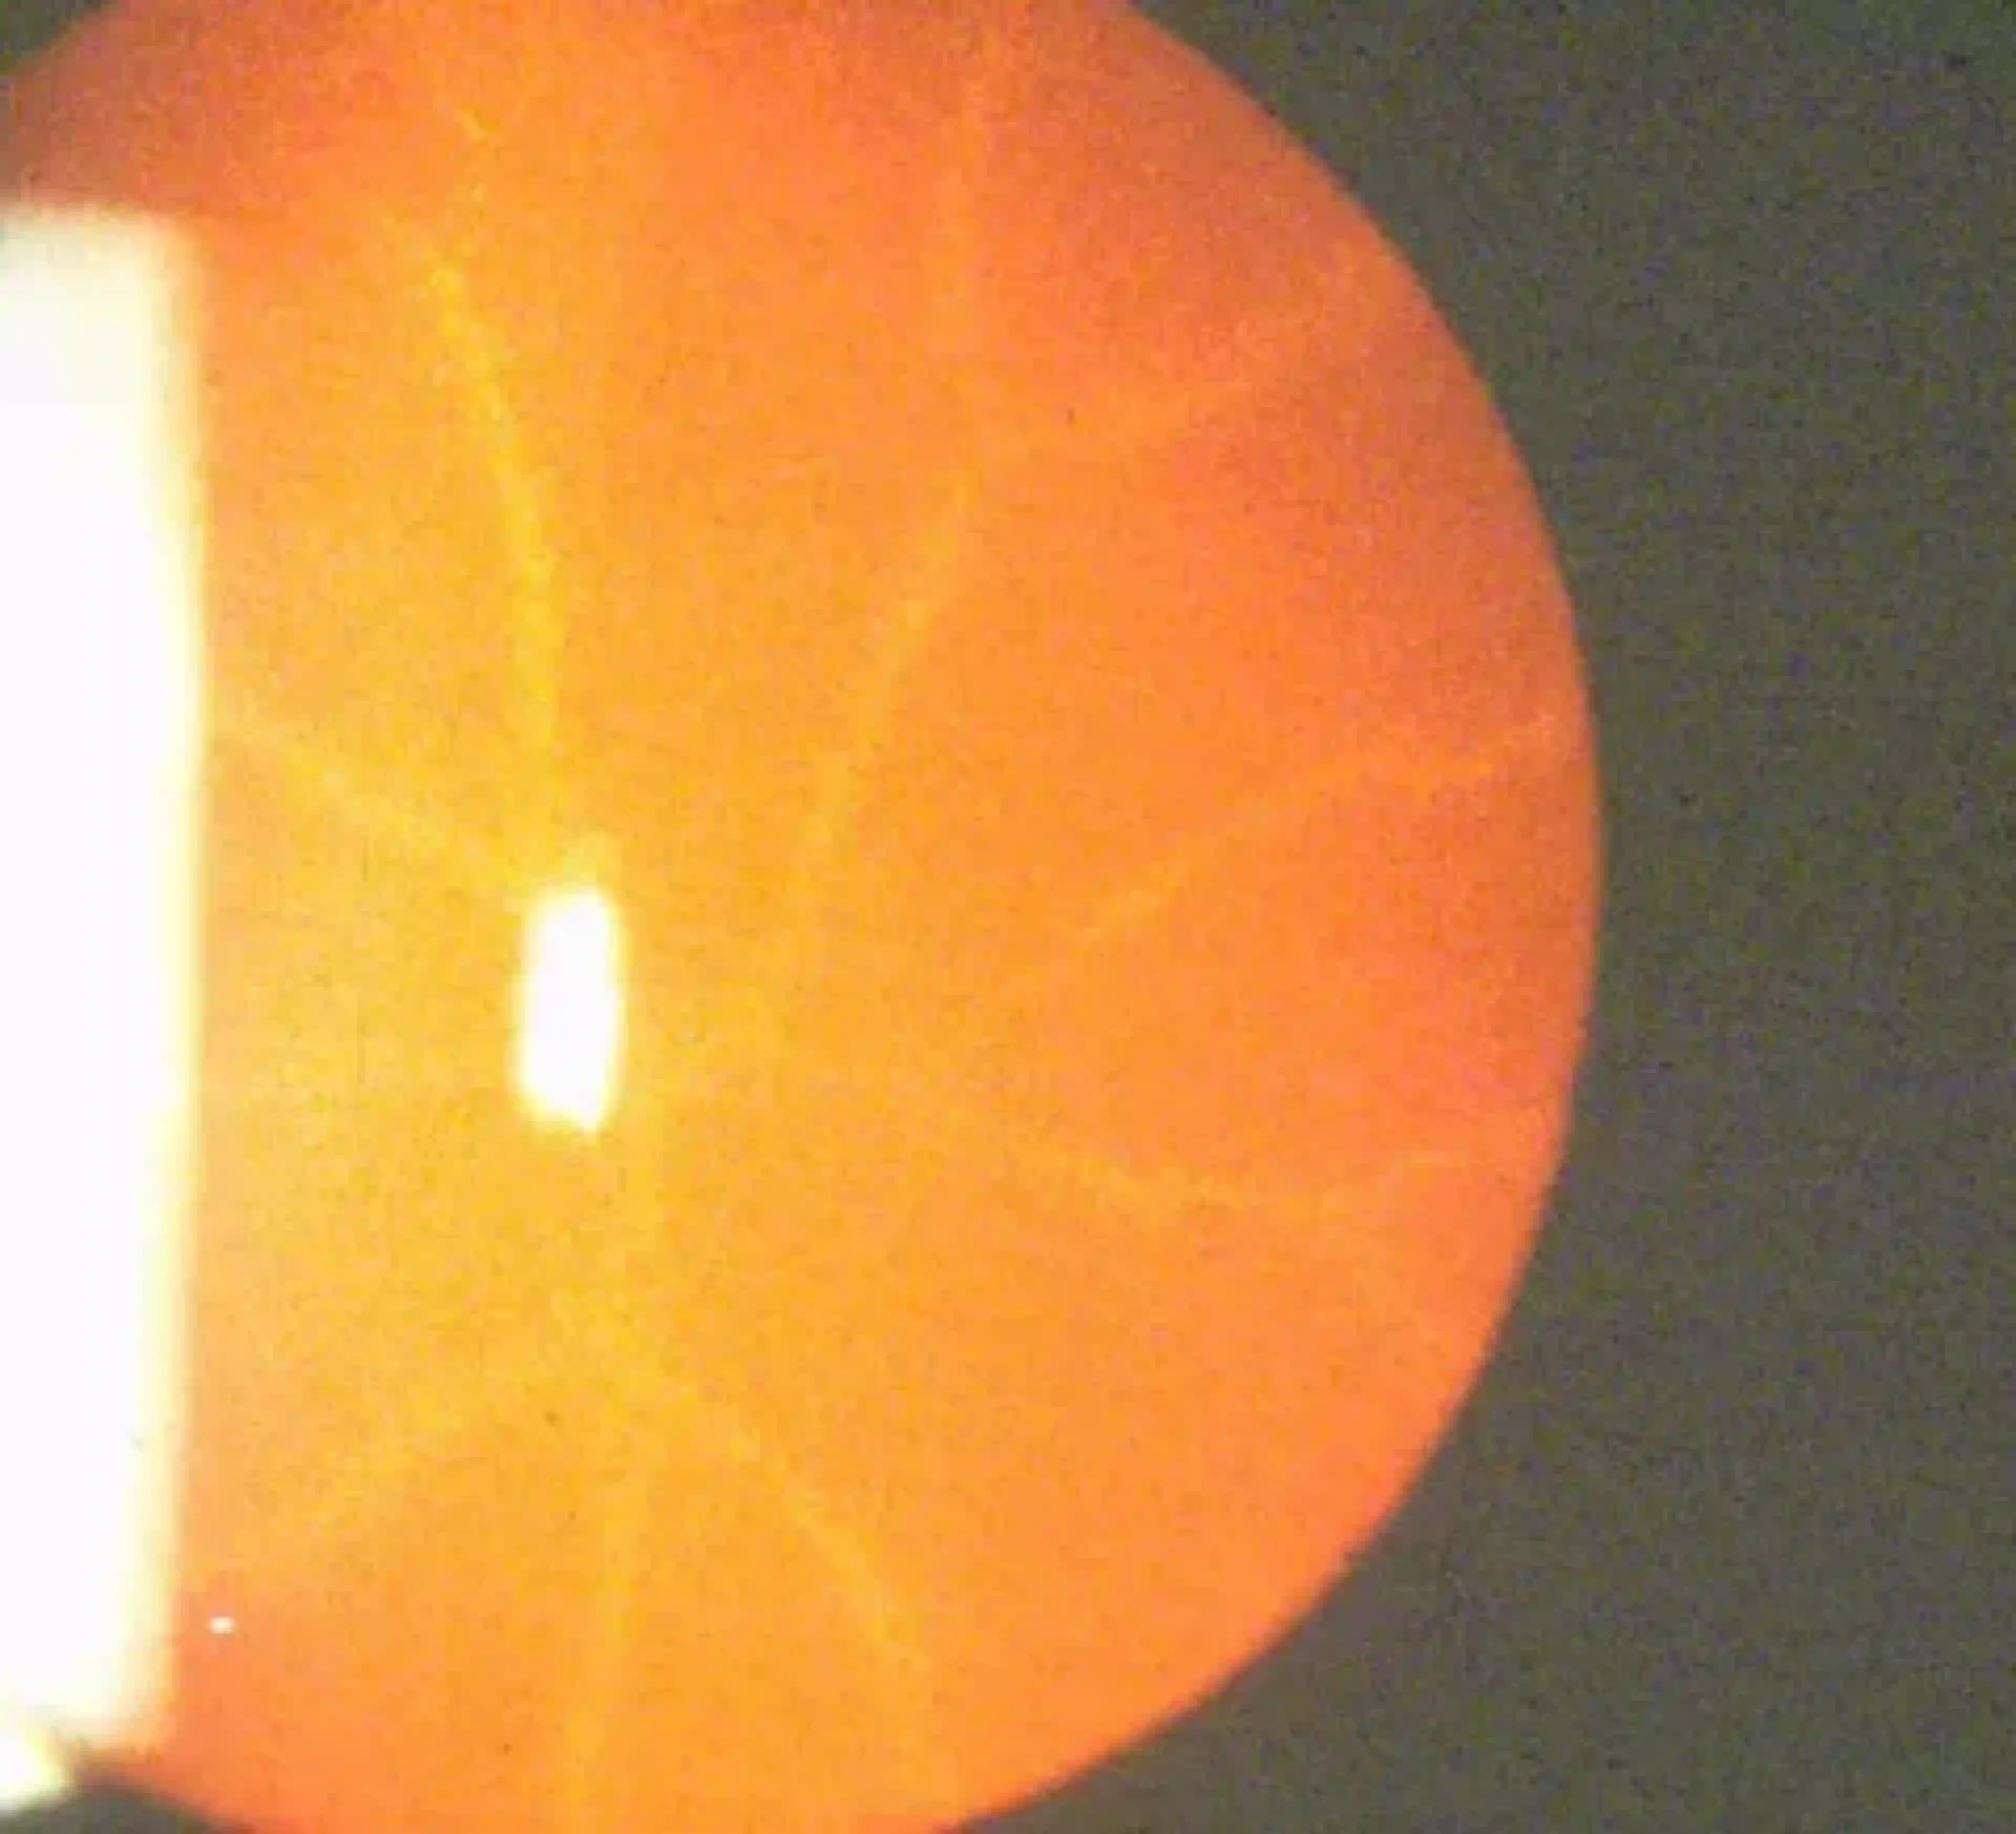 Un gros plan d’un œil avec une cataracte postérieure